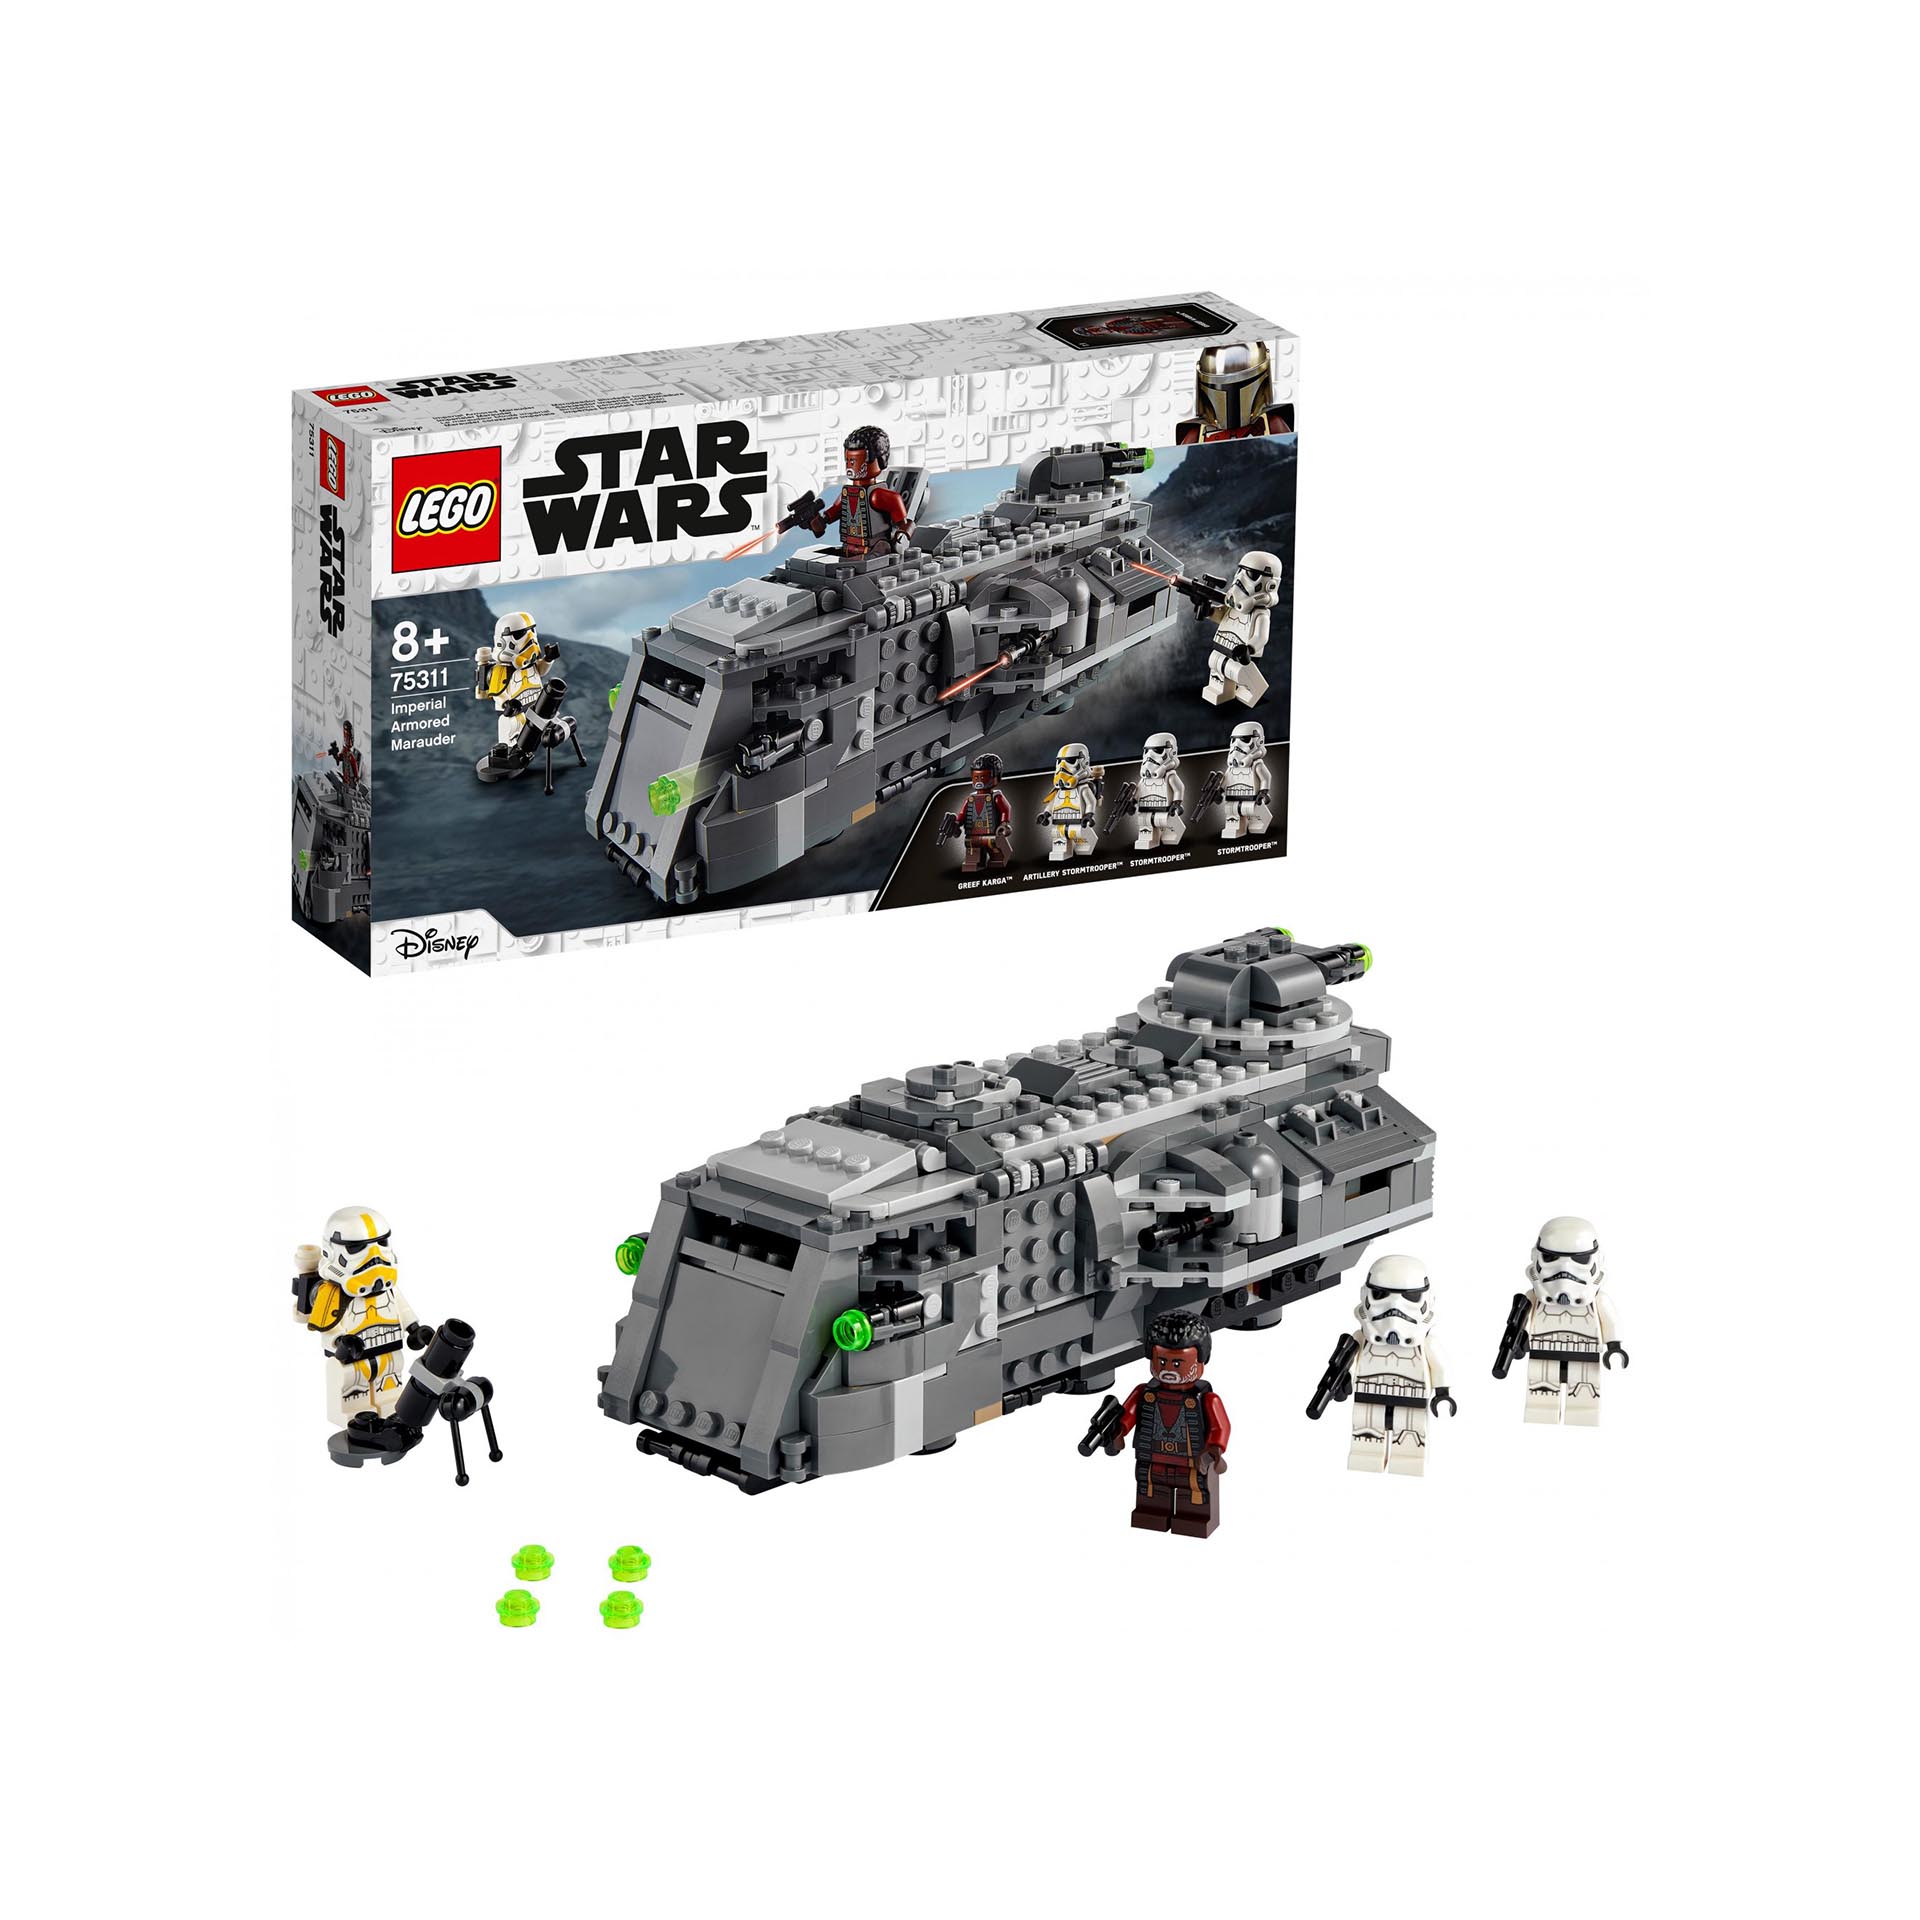 LEGO Star Wars Marauder Corazzato Imperiale, Set da Costruzione con 4 Personaggi 75311, , large